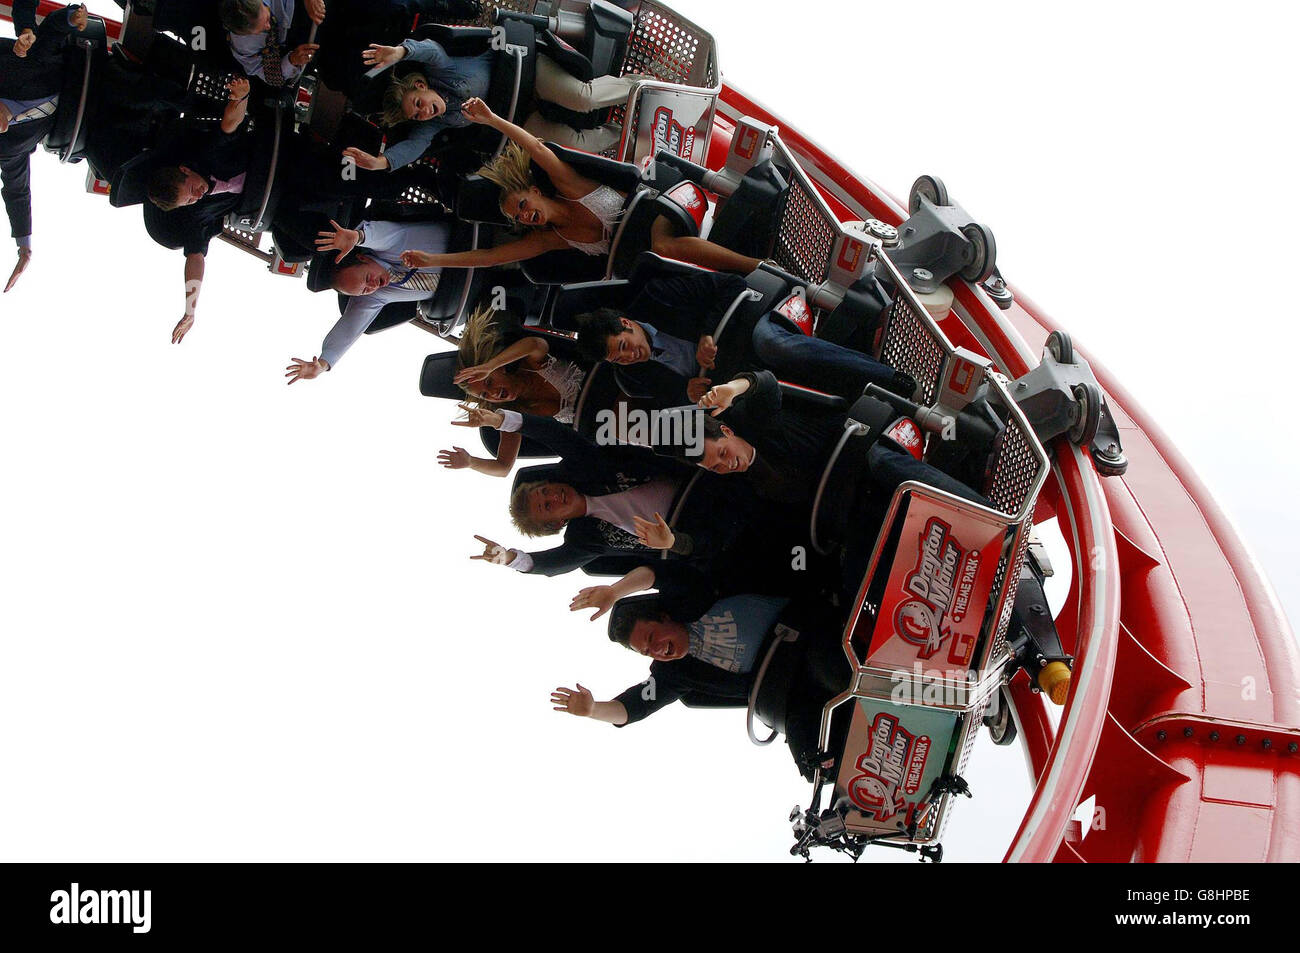 3 Million Rollercoaster G Force, die erste Fahrt auf der Welt, die ein revolutionäres Hüftrückhaltesystem für Adrenalin-Junkies aller Größen verwendet. Stockfoto